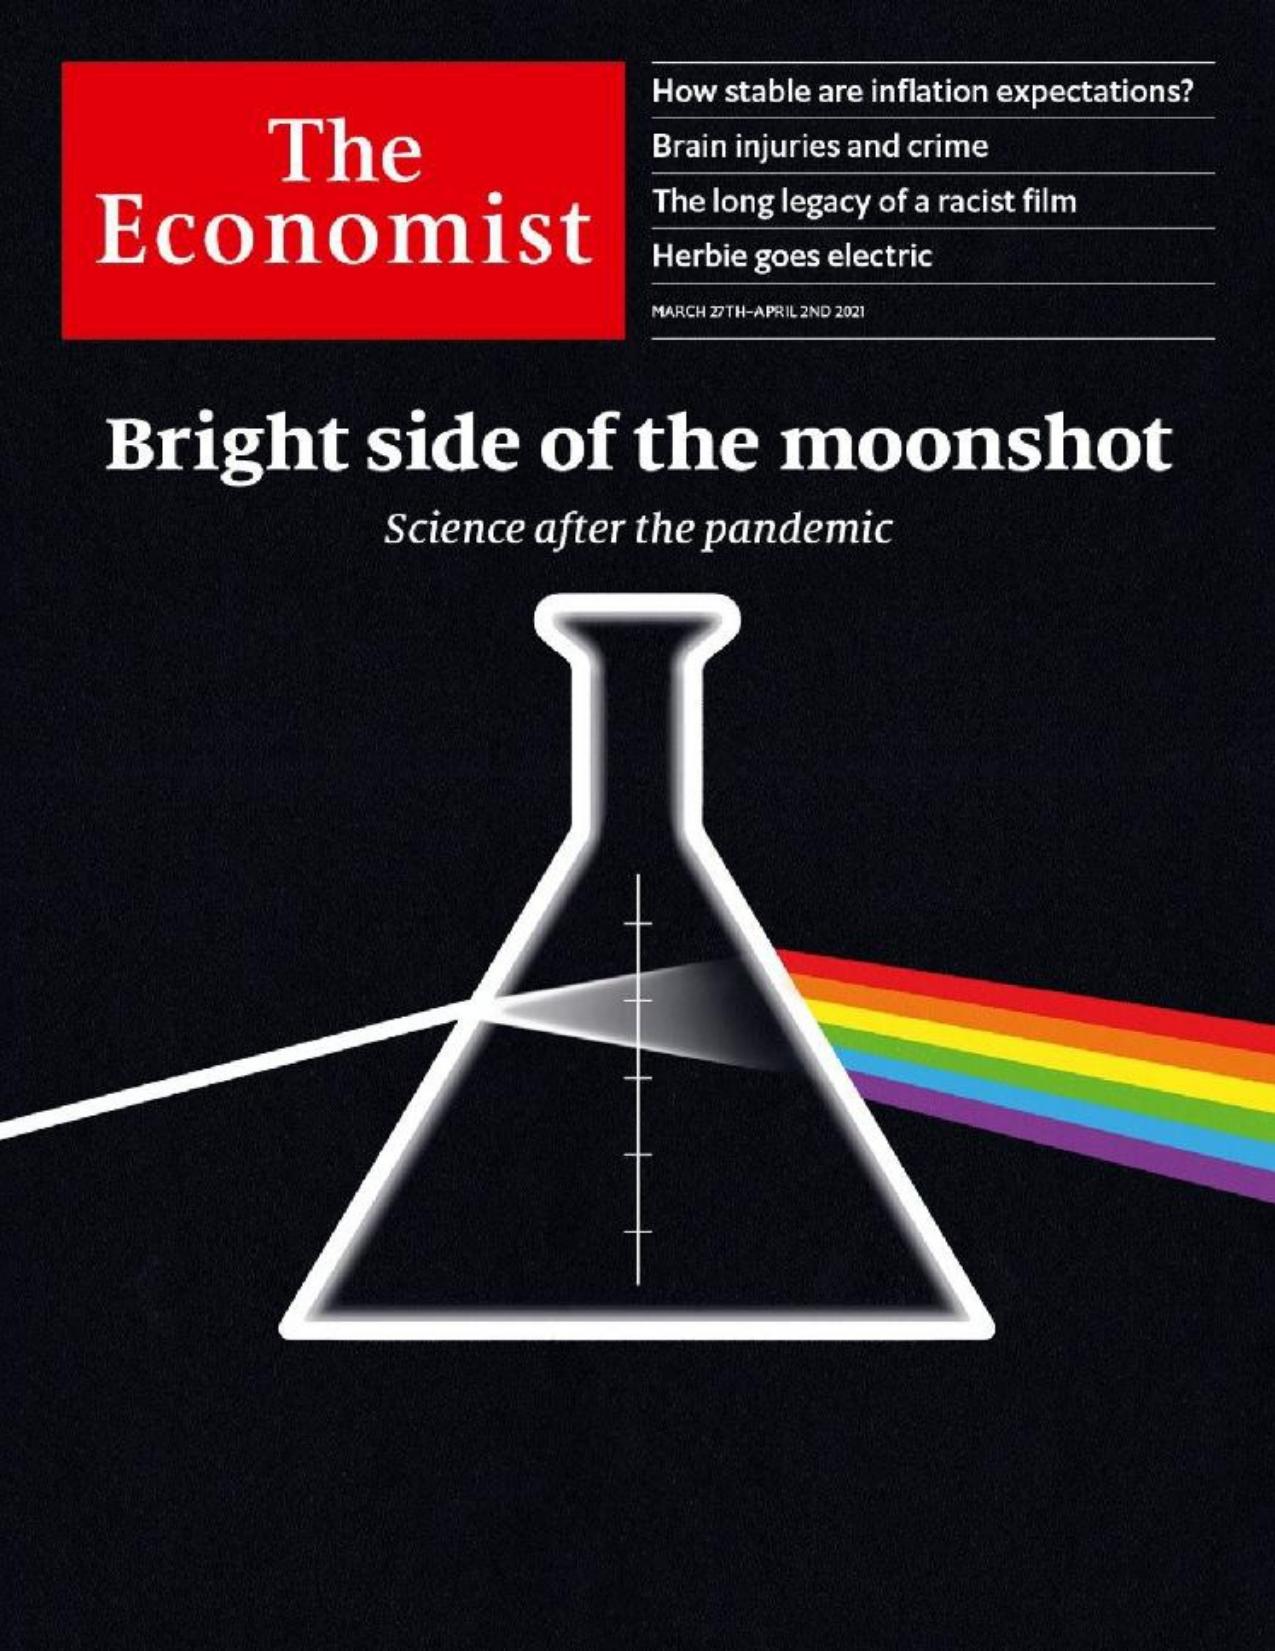 The Economist (20210327) by calibre